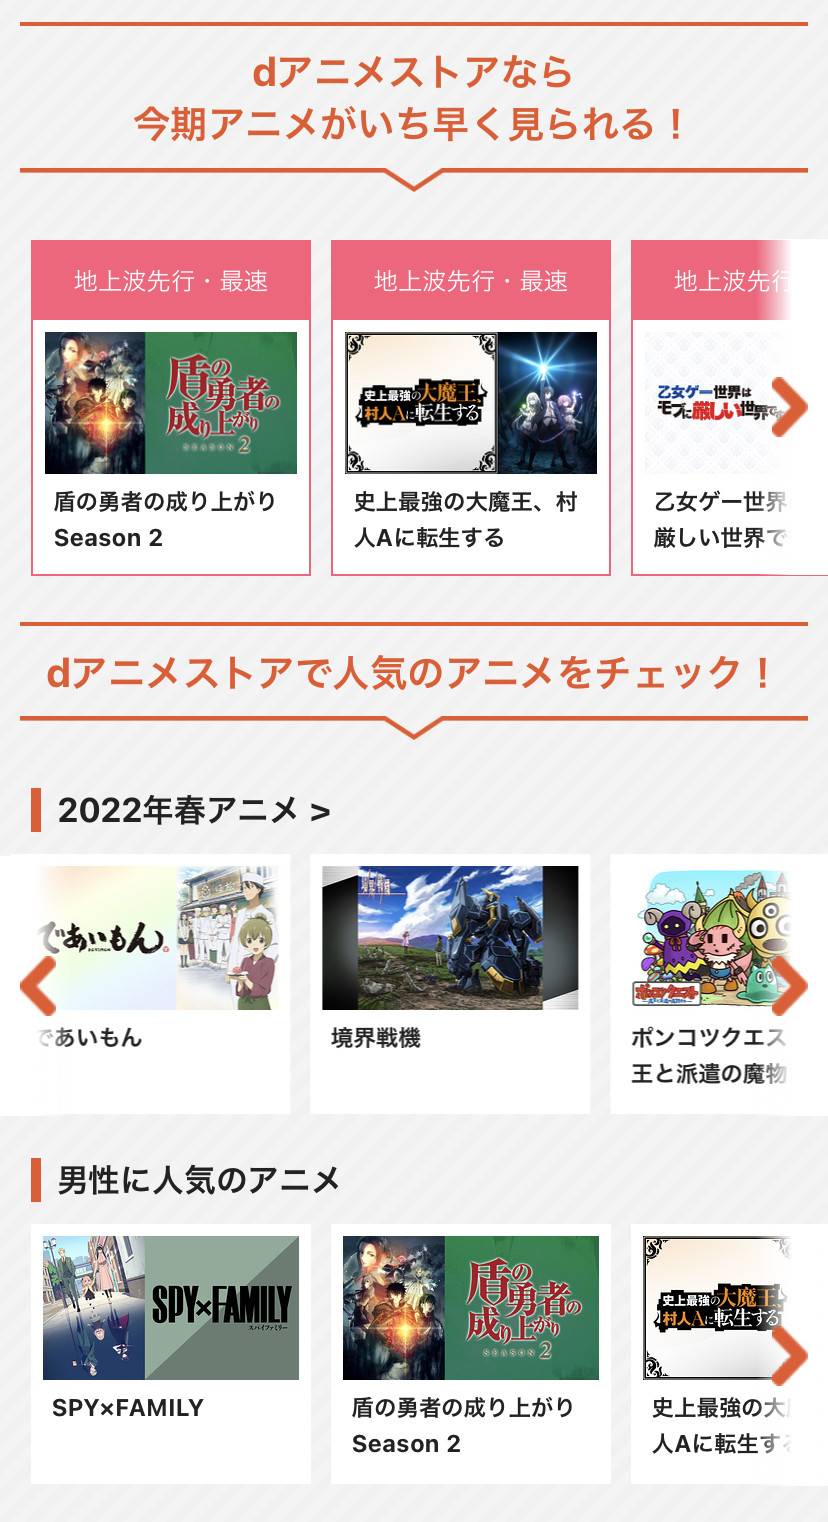 「dアニメストア」公式サイト最新アニメ検索画面